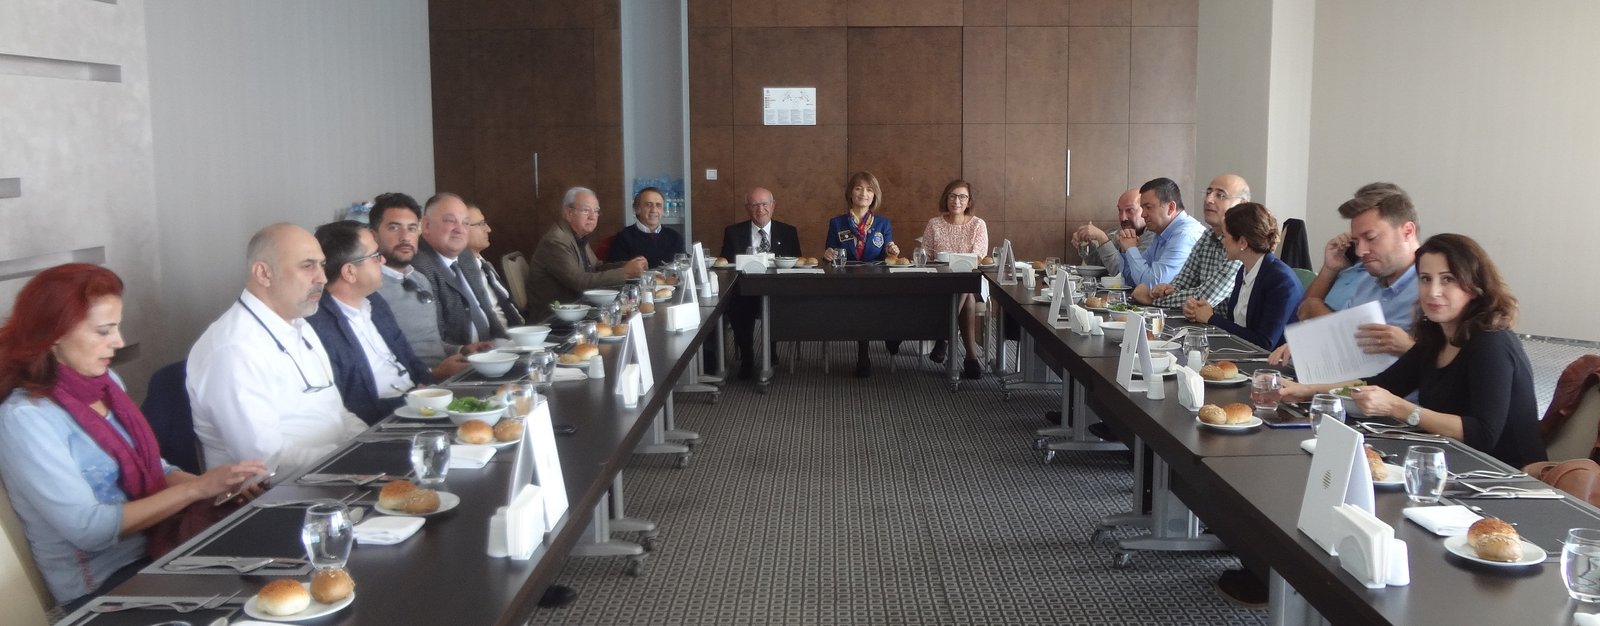 27 Kasım 2019 Tarihli Toplantı Antalya Kaleiçi Rotary Kulübü 